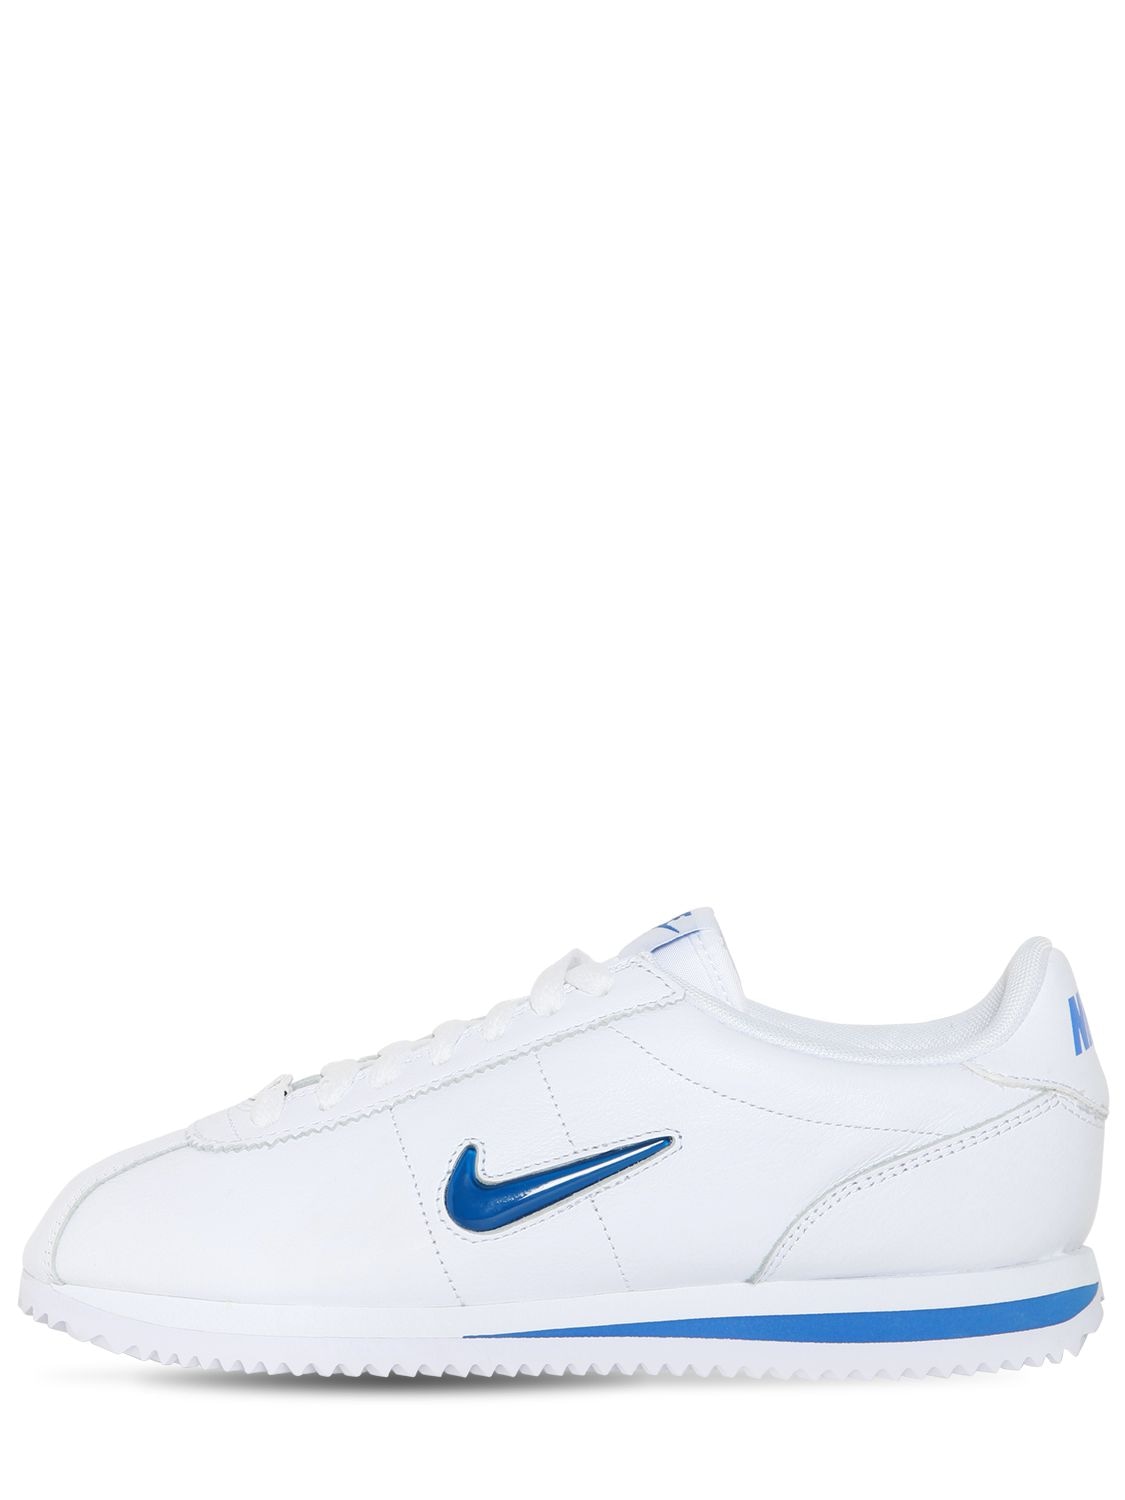 Basic Sneakers In White/blue | ModeSens